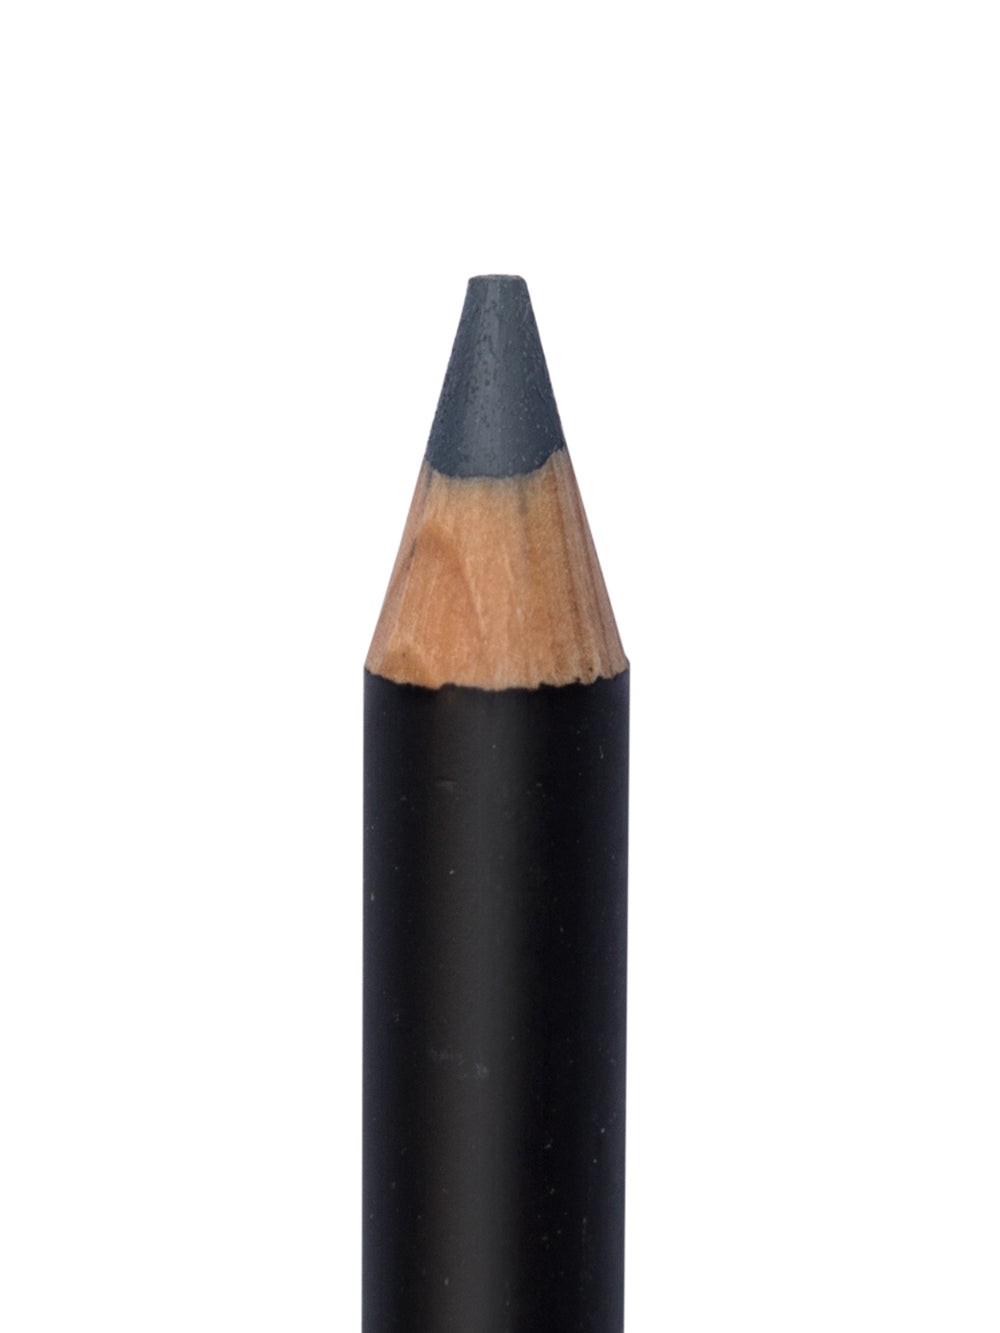 Wet & Dry Eyeliner Pencil - Brown